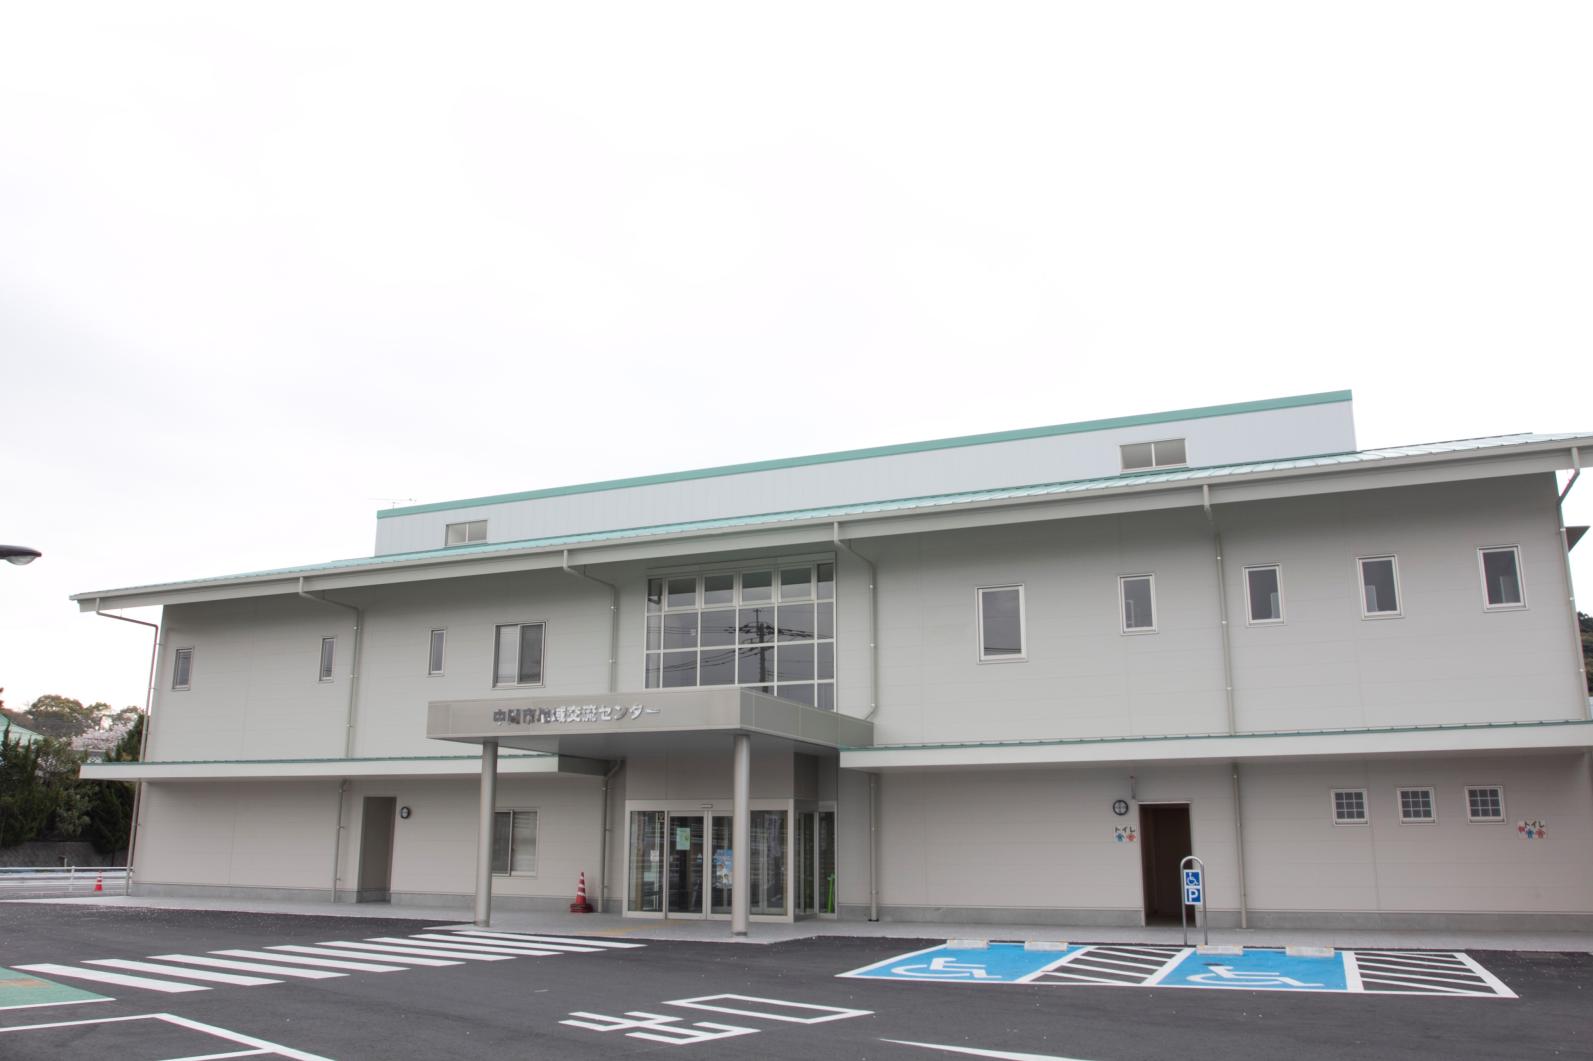 Nakama-shi Community Exchange Center